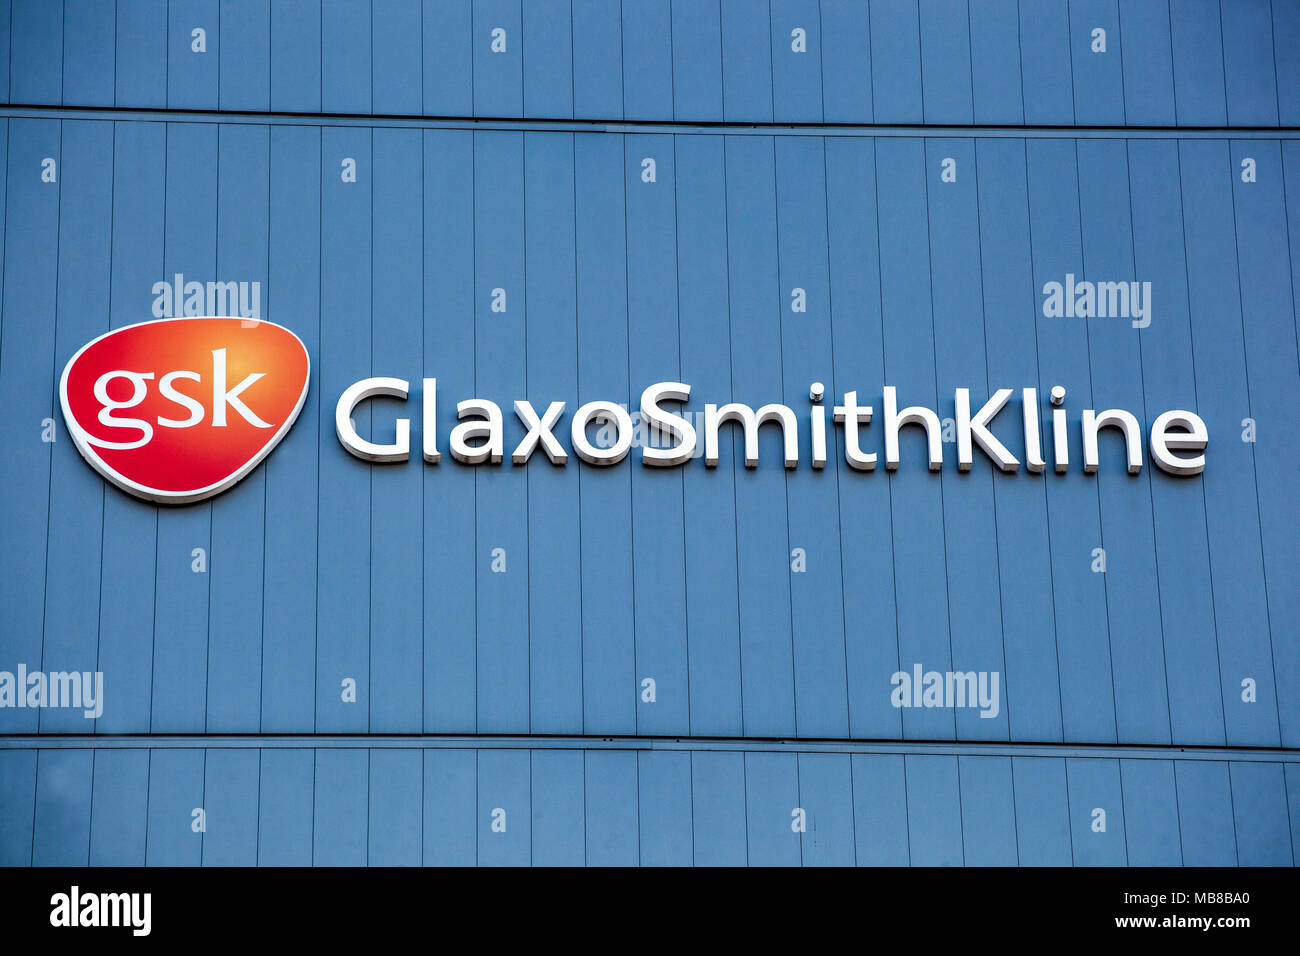 GSK logo, GlaxoSmithKline logo, Dresden, Germany Stock Photo